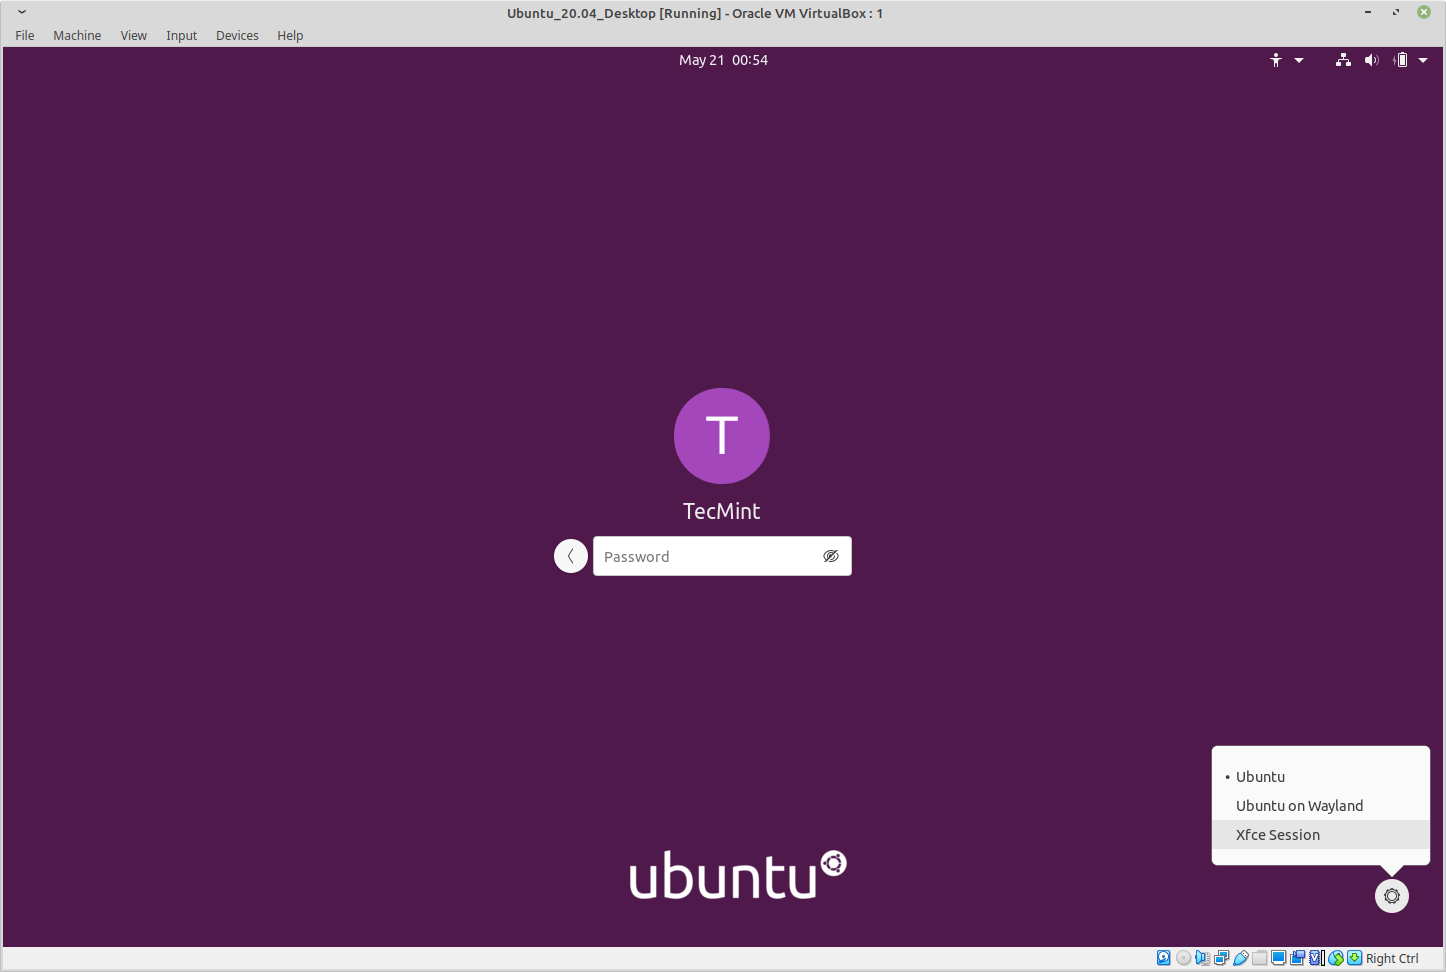 In Ubuntu, select XFCE